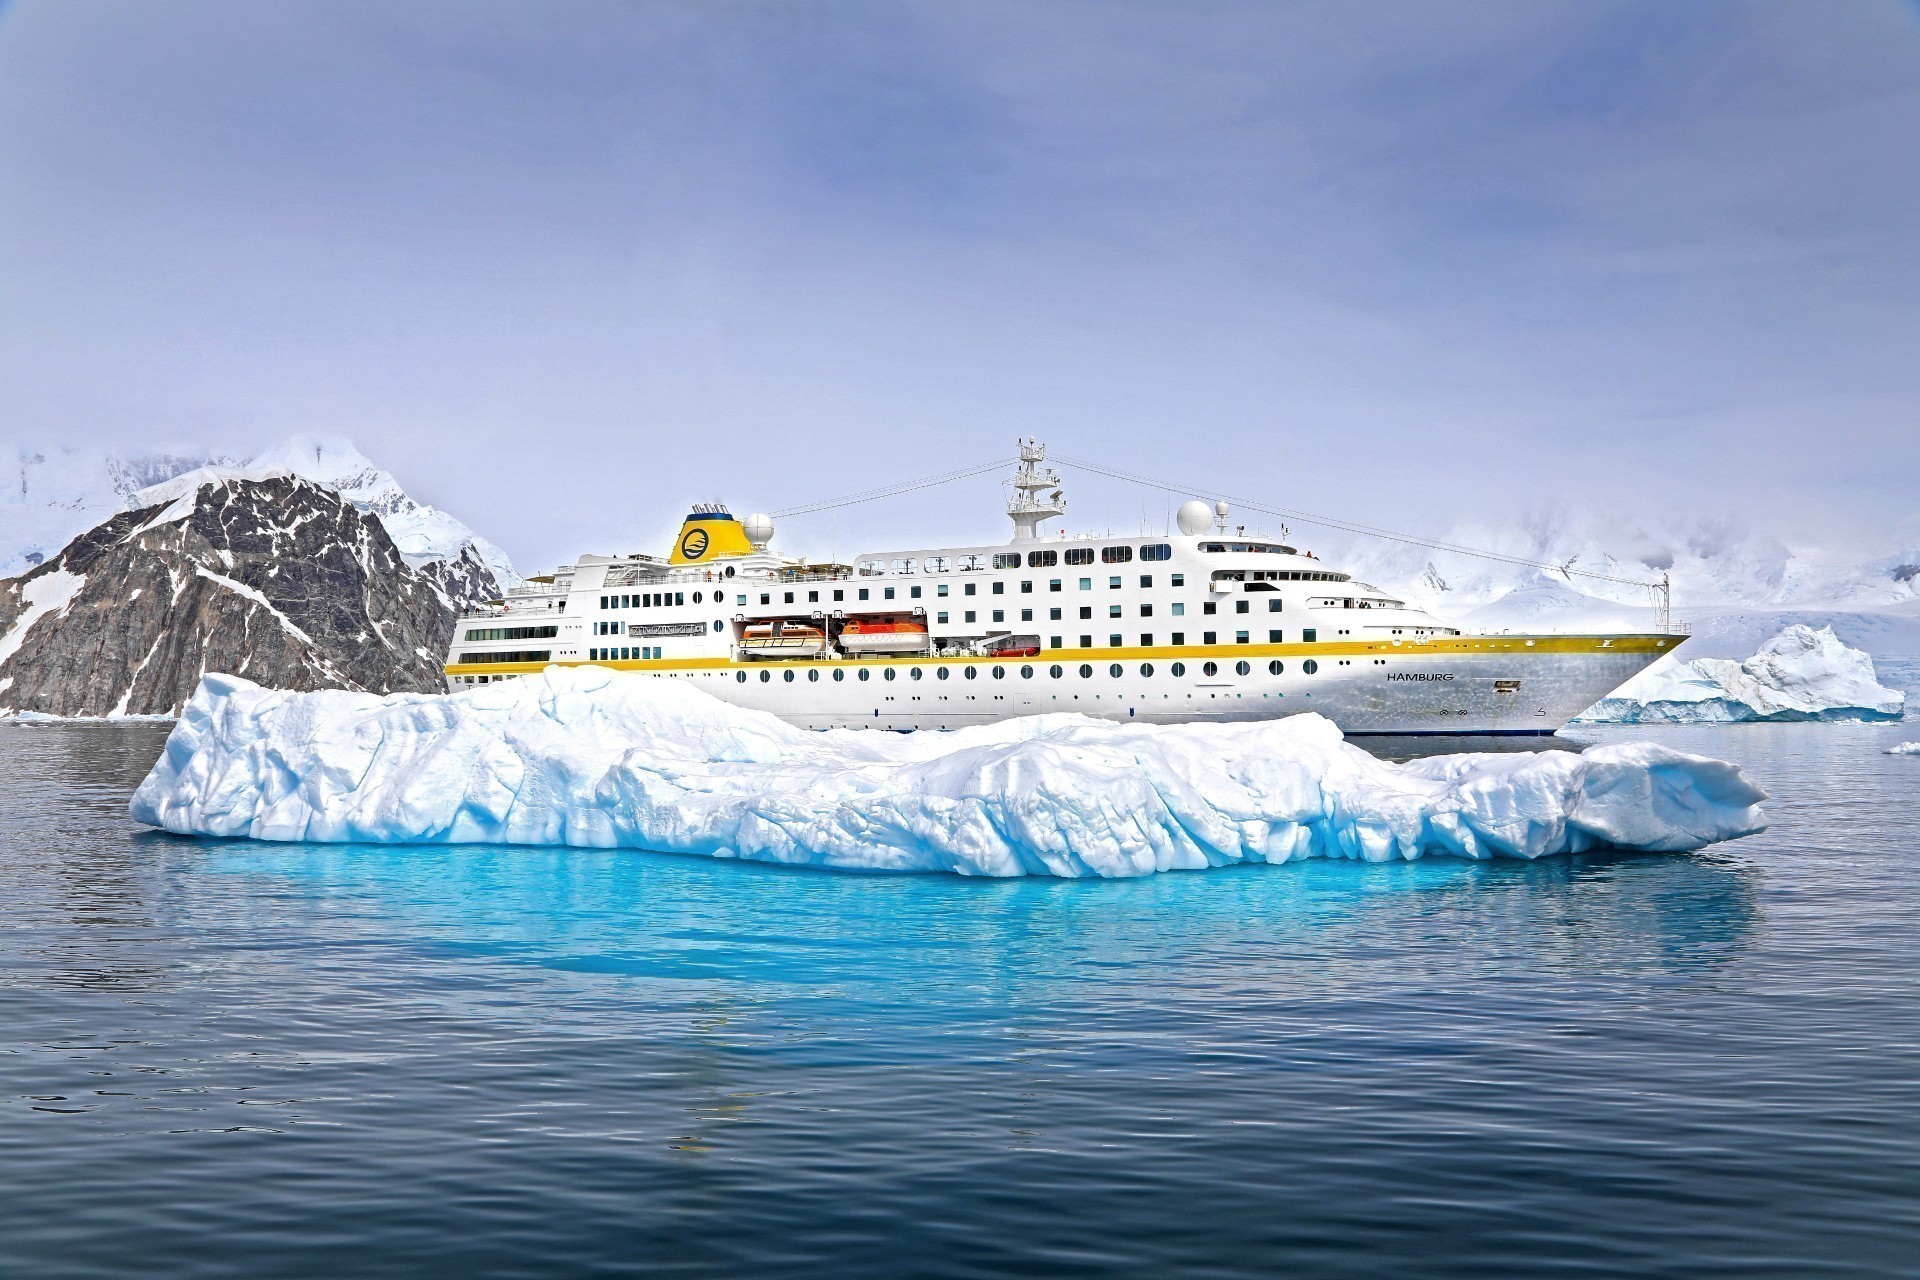 Antarktis Kreuzfahrt Bremen: Die MS Hamburg der Reederei Plantours auf Antarktis-Kreuzfahrt vor einer großen EIsscholle.